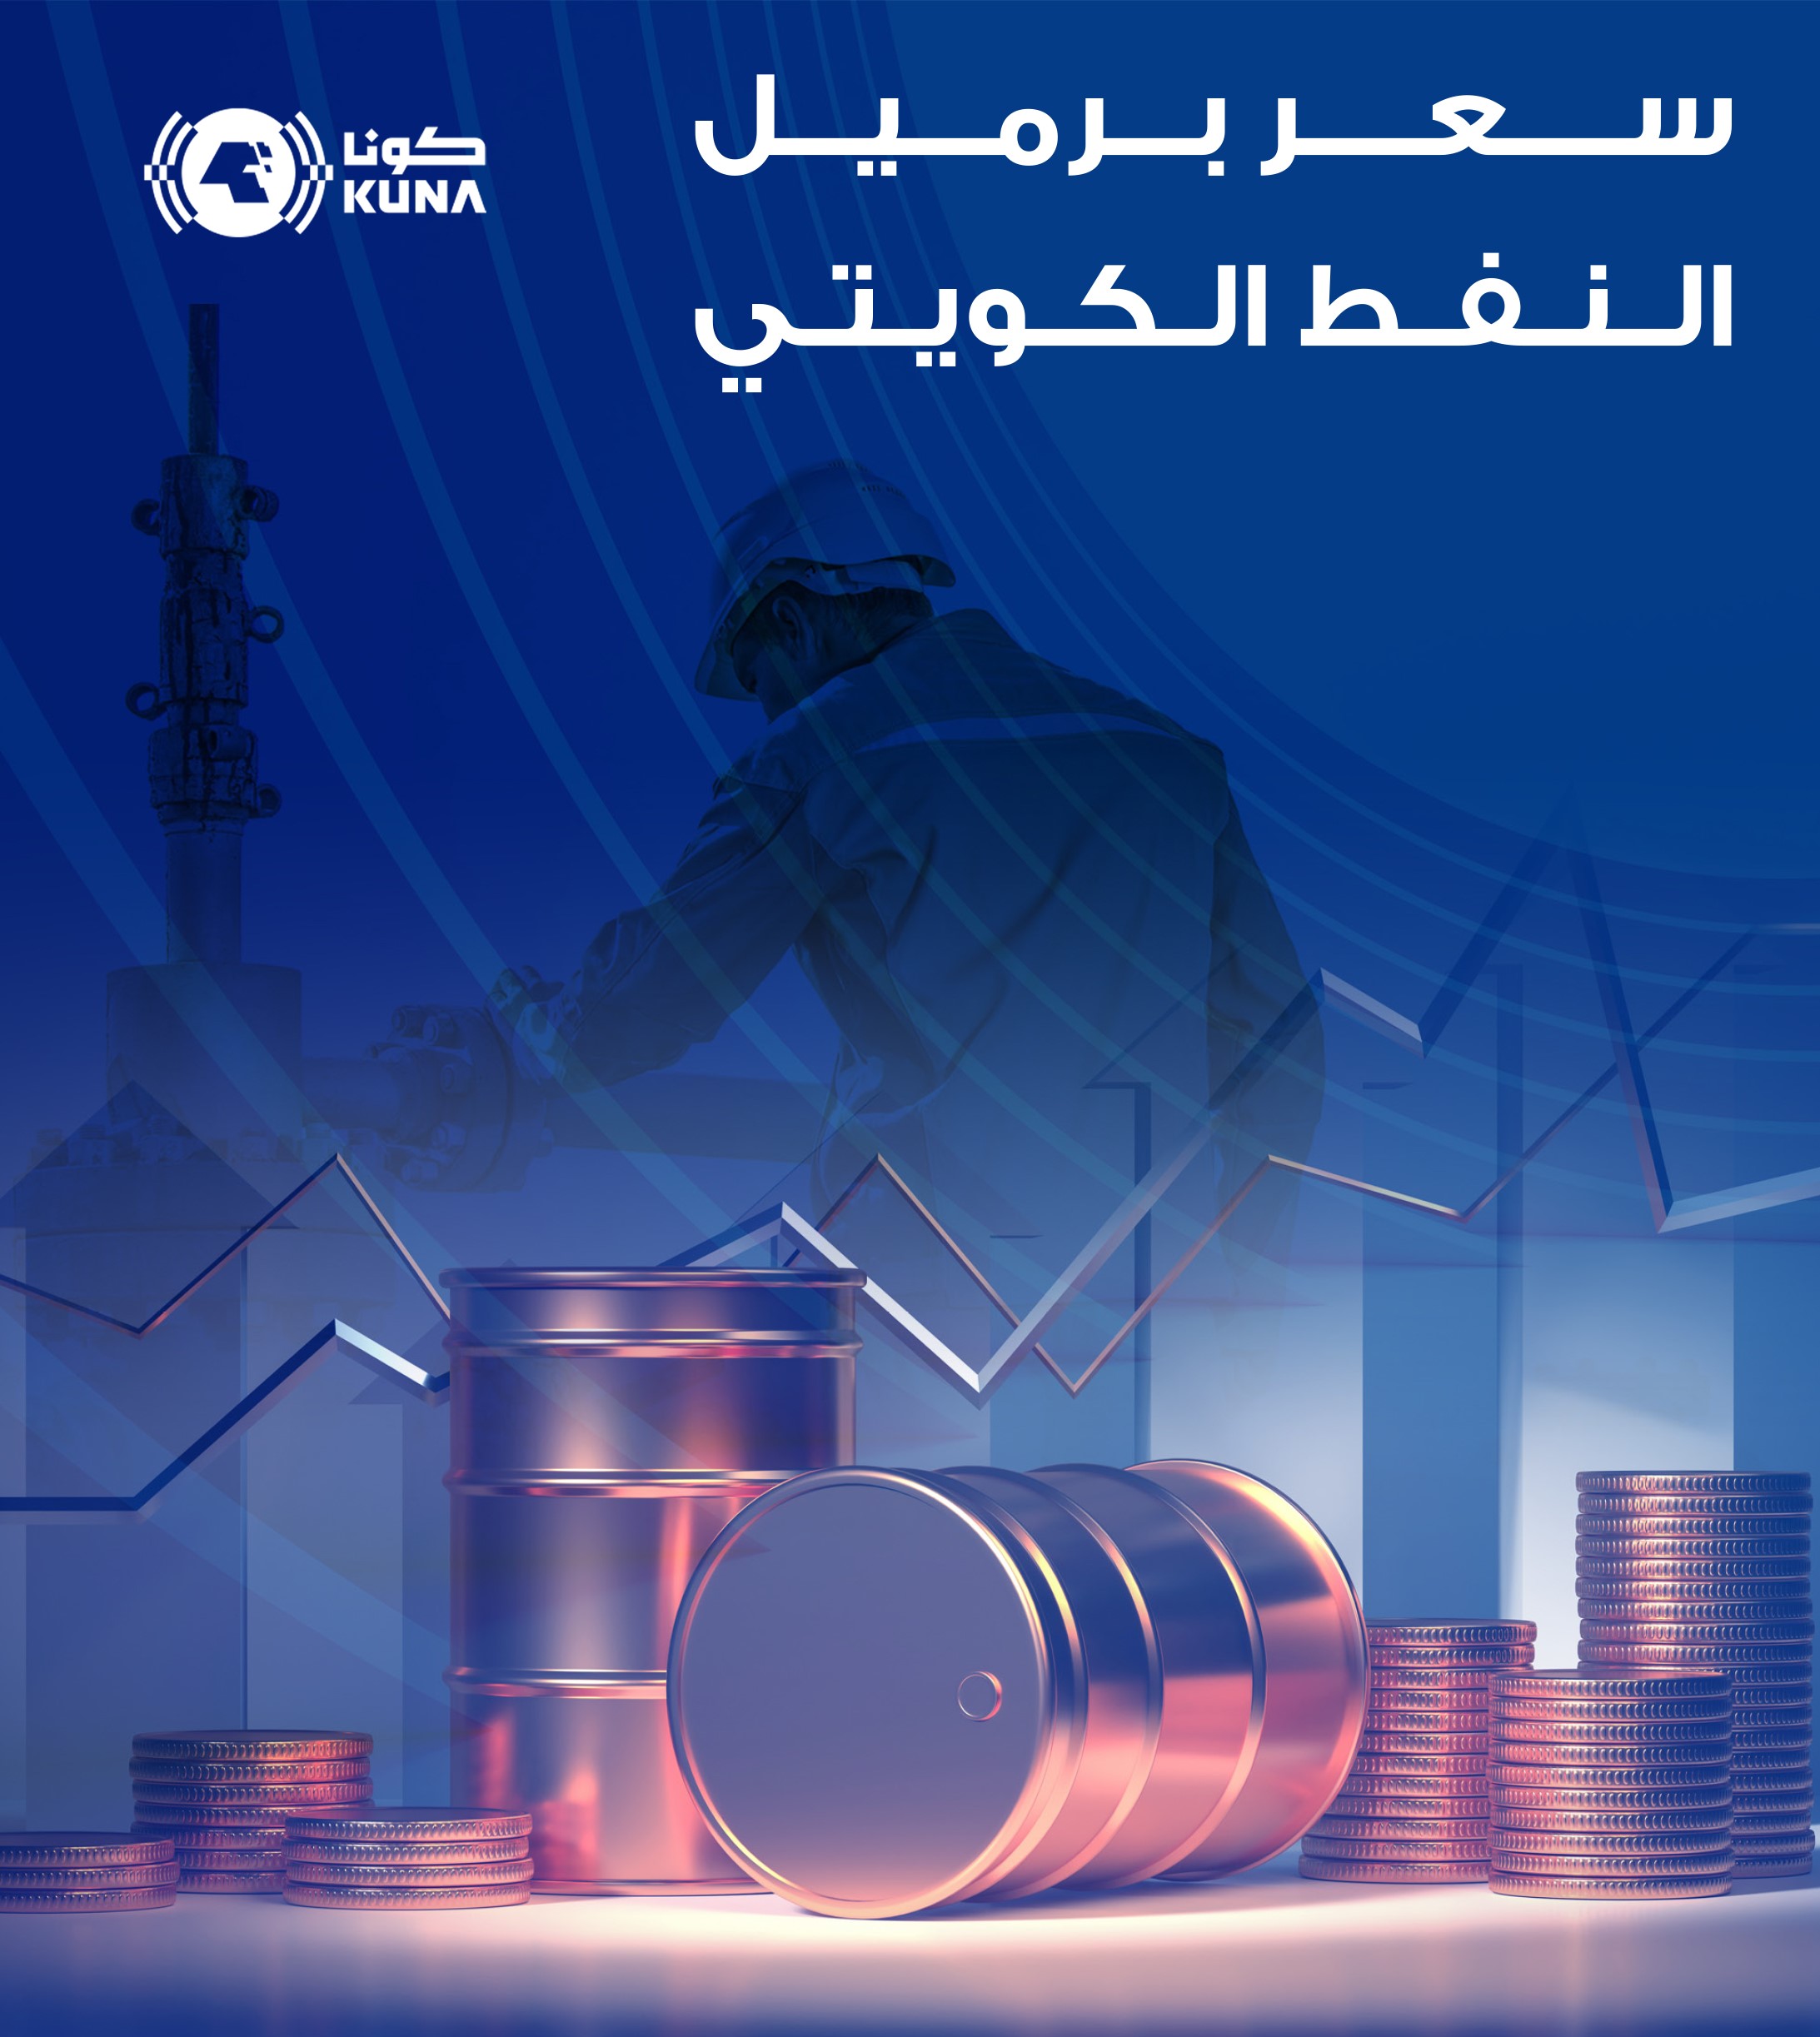   سعر برميل النفط الكويتي يرتفع 1.95 دولار ليبلغ 89.12 دولار